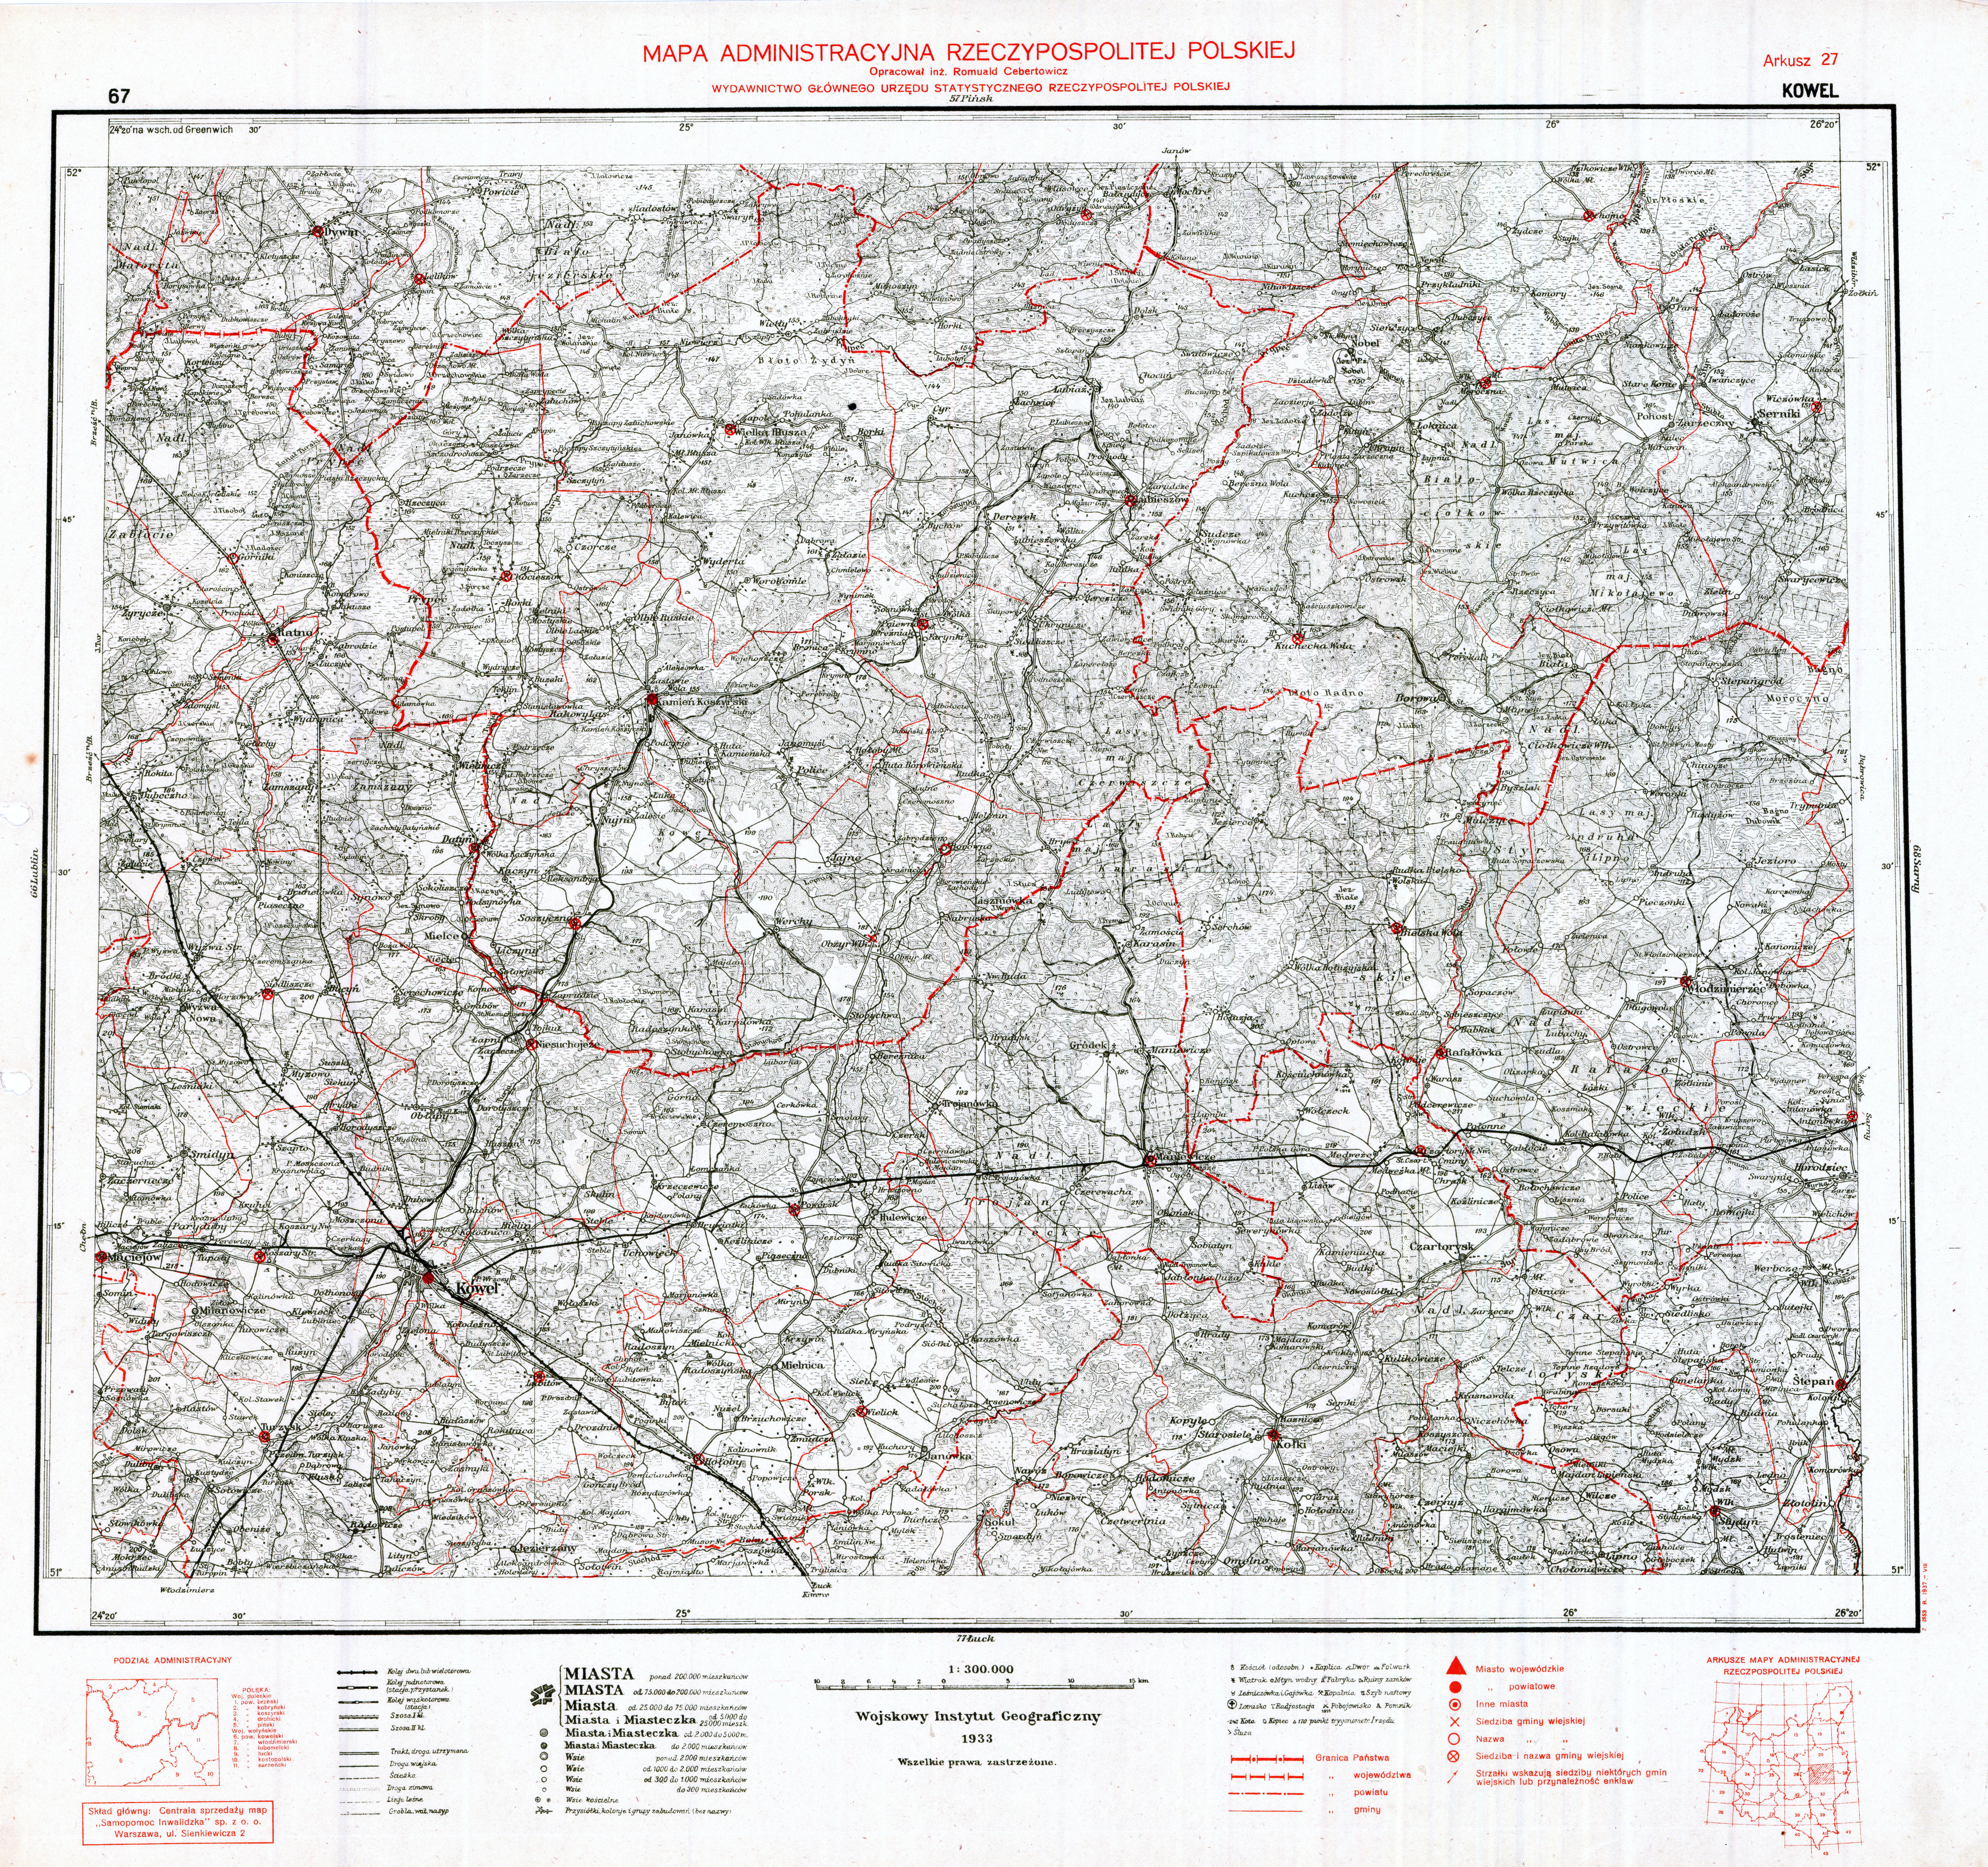 Mapa administracyjna Rzeczypospolitej Polskiej 1-300.000 - 67 - Arkusz 27 KOWEL WIG 1937.jpg